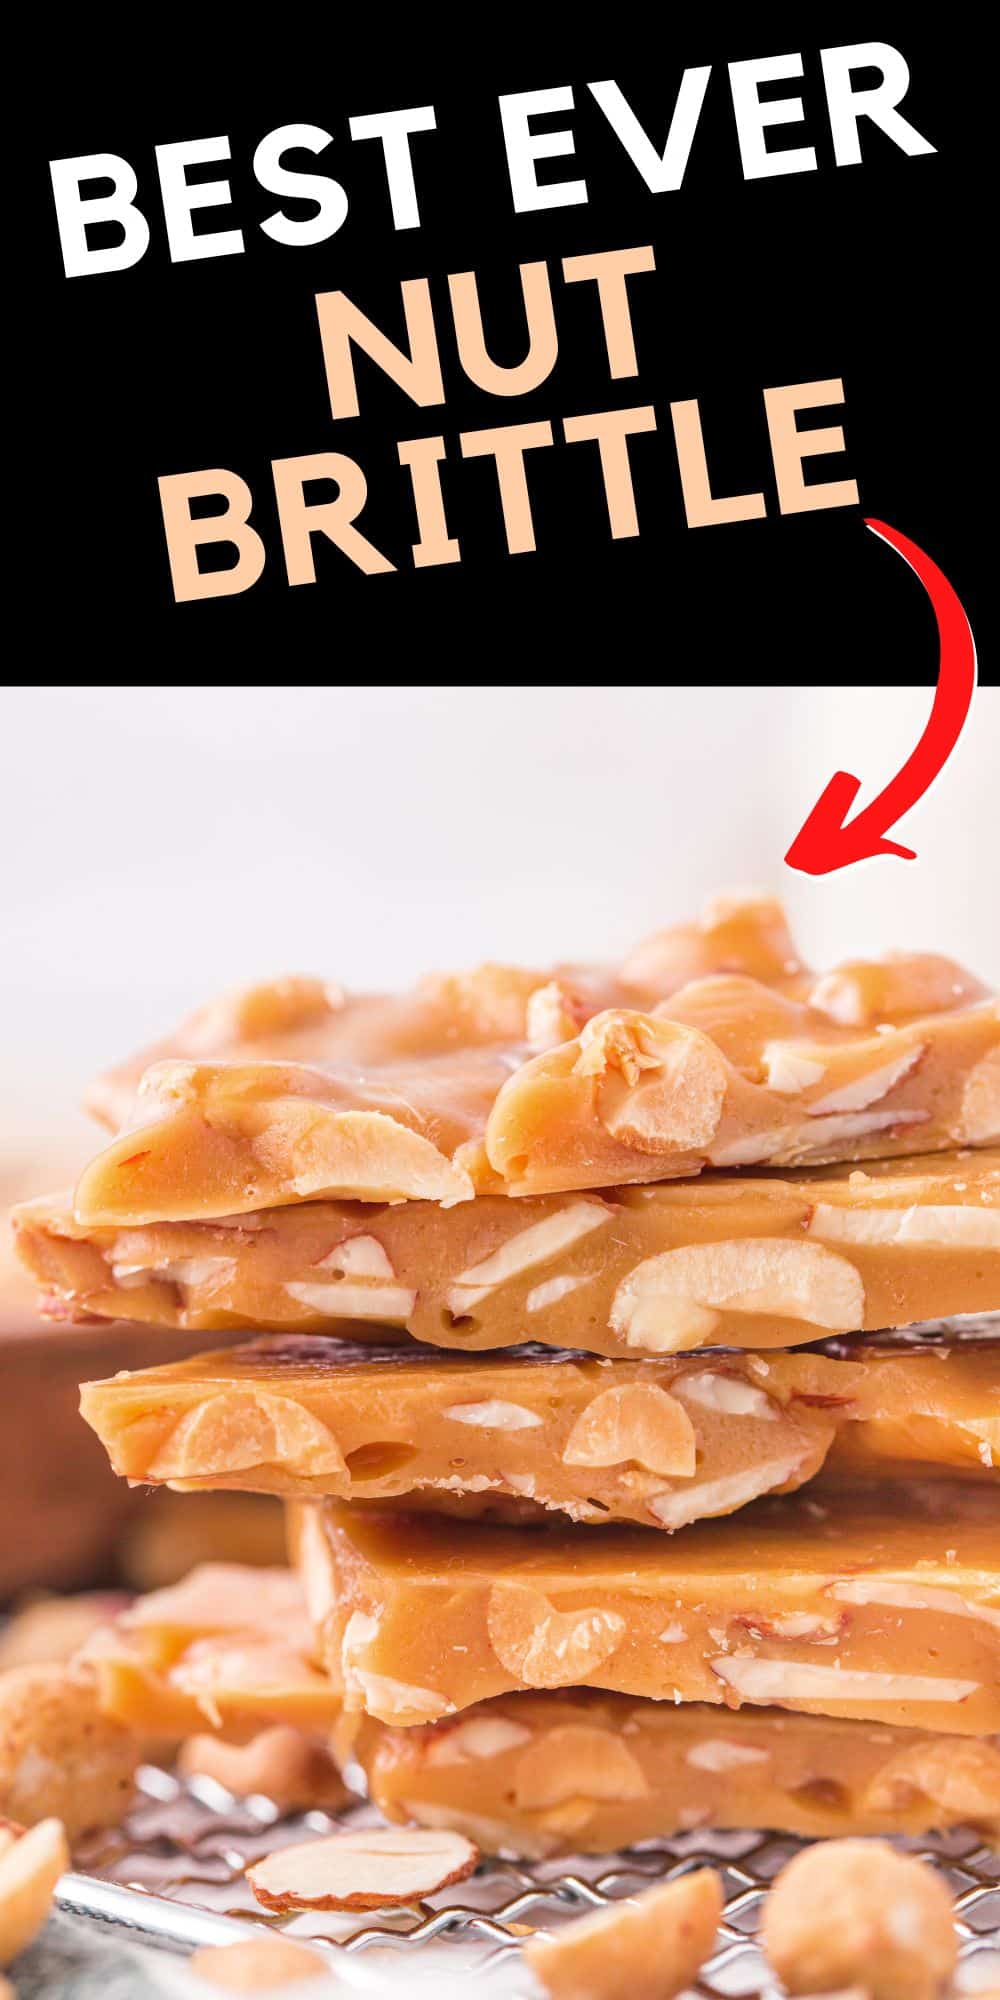 Best Ever Nut Brittle